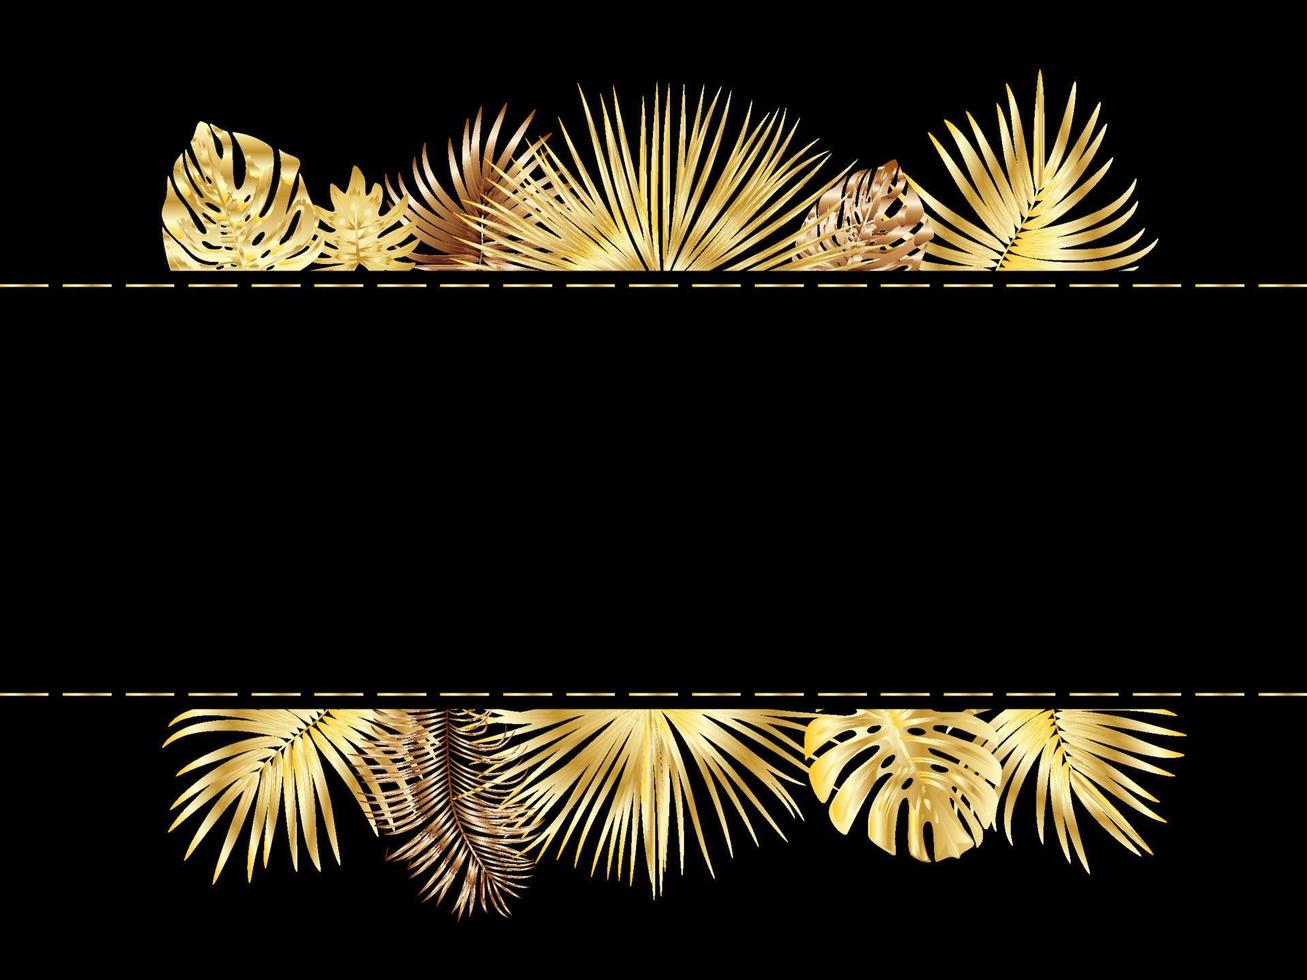 cadre de jungle tropicale de vecteur avec palmiers dorés et feuilles sur fond noir